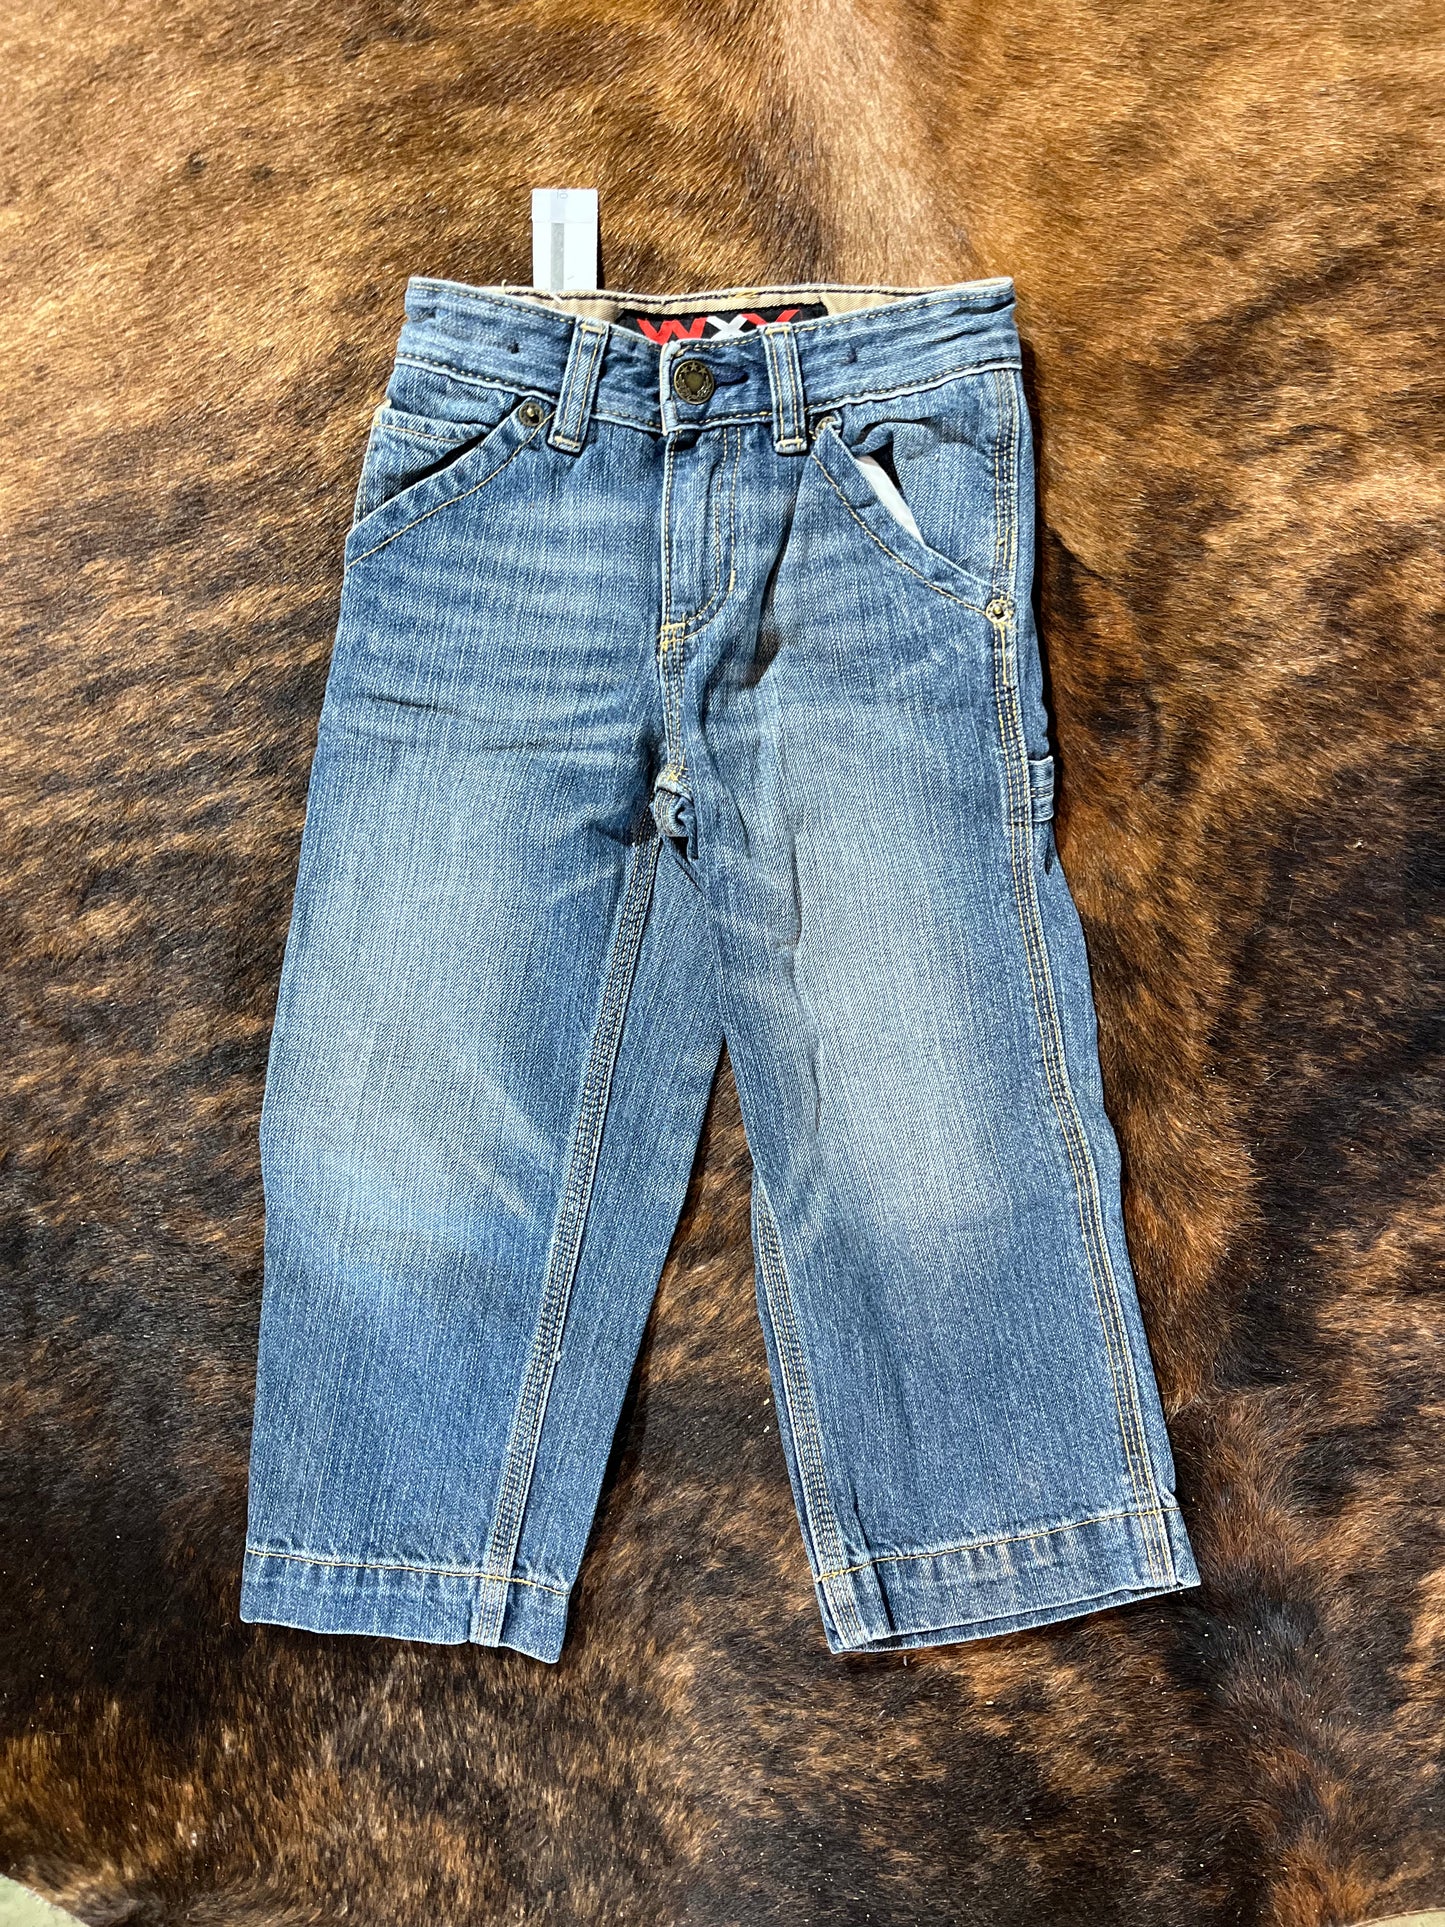 Boys Jean size 4 - WXY Brand